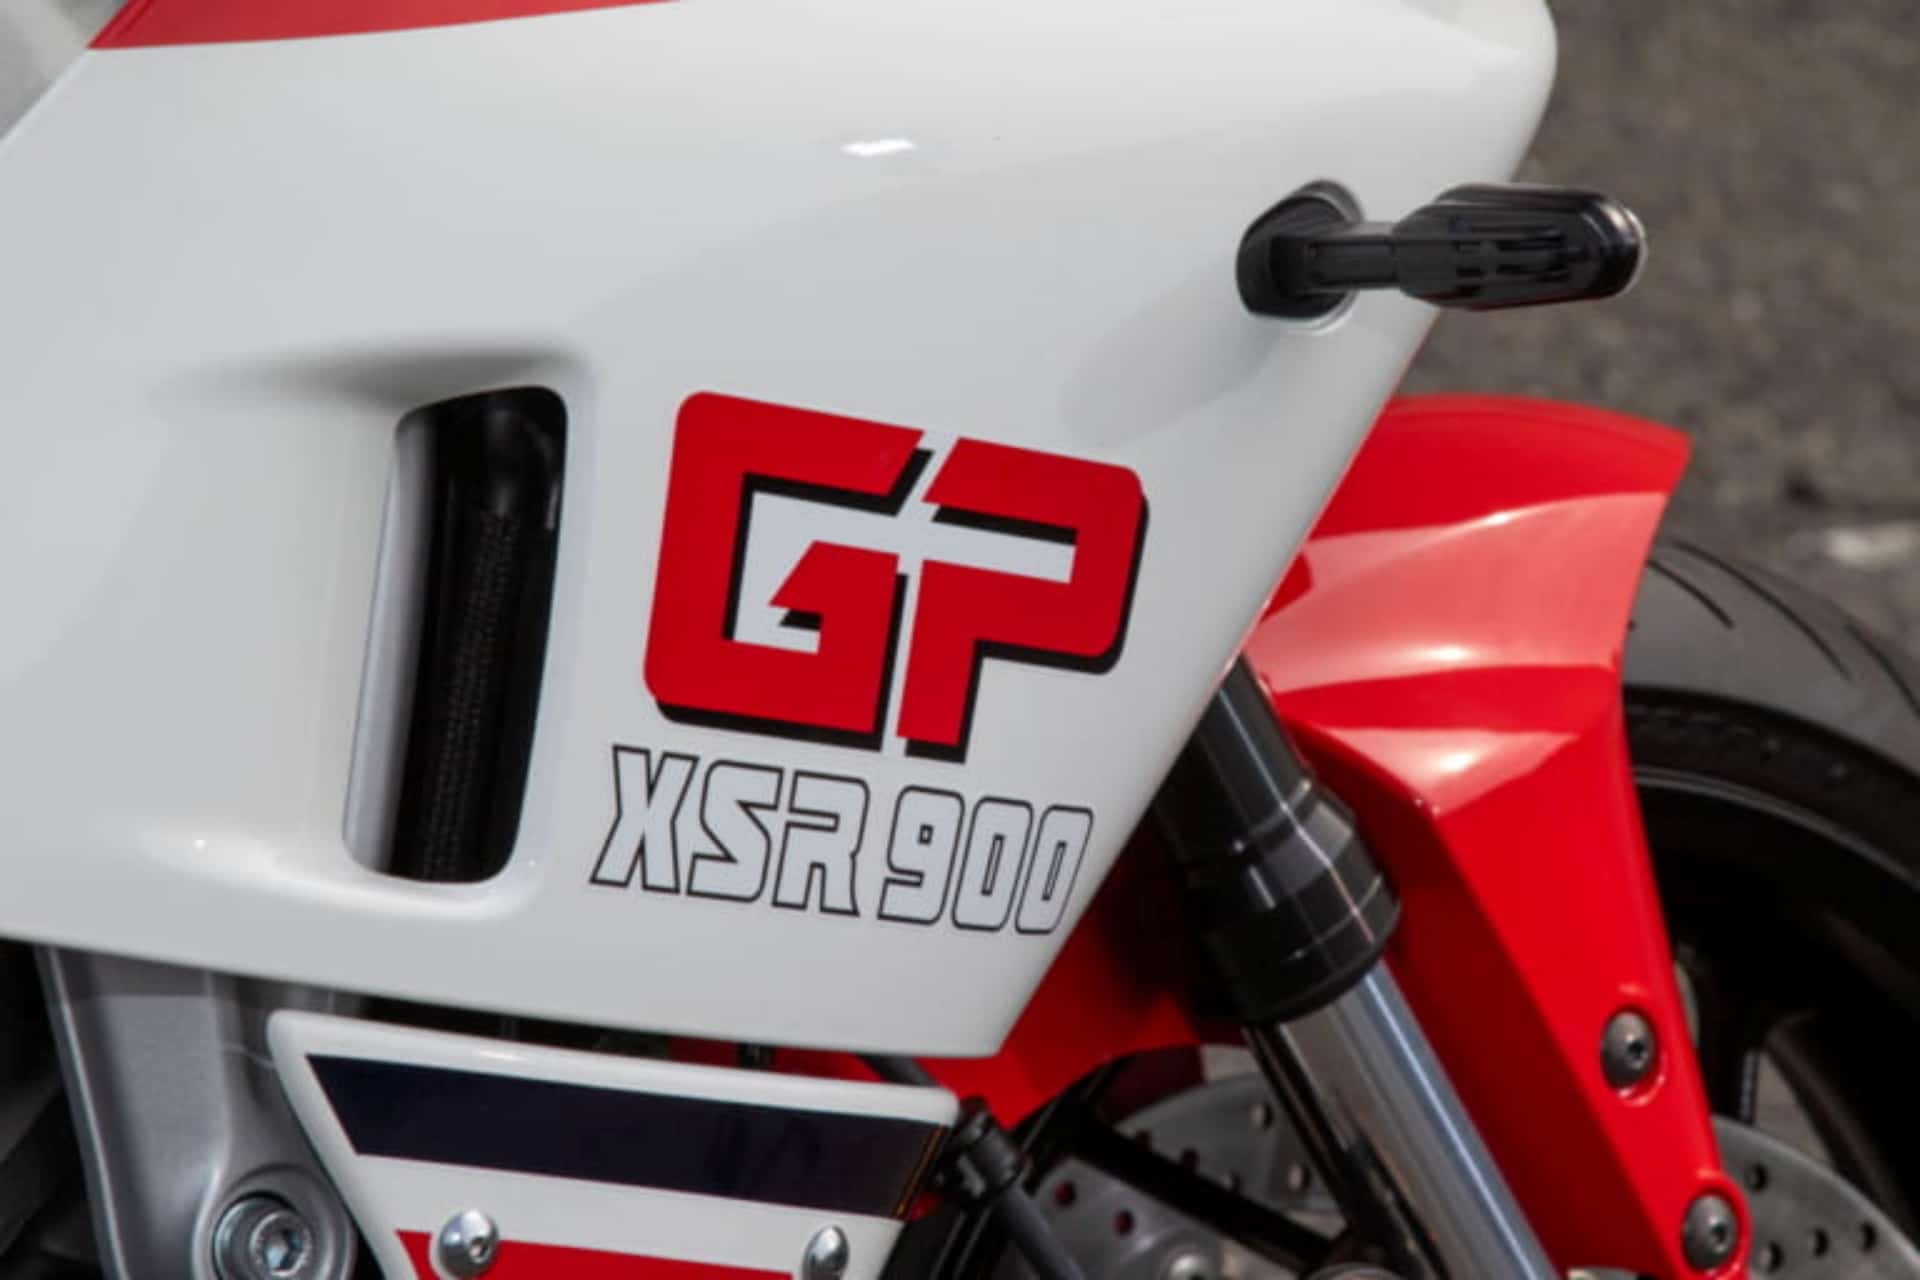 Yamaha XSR900 GP Ys Gear